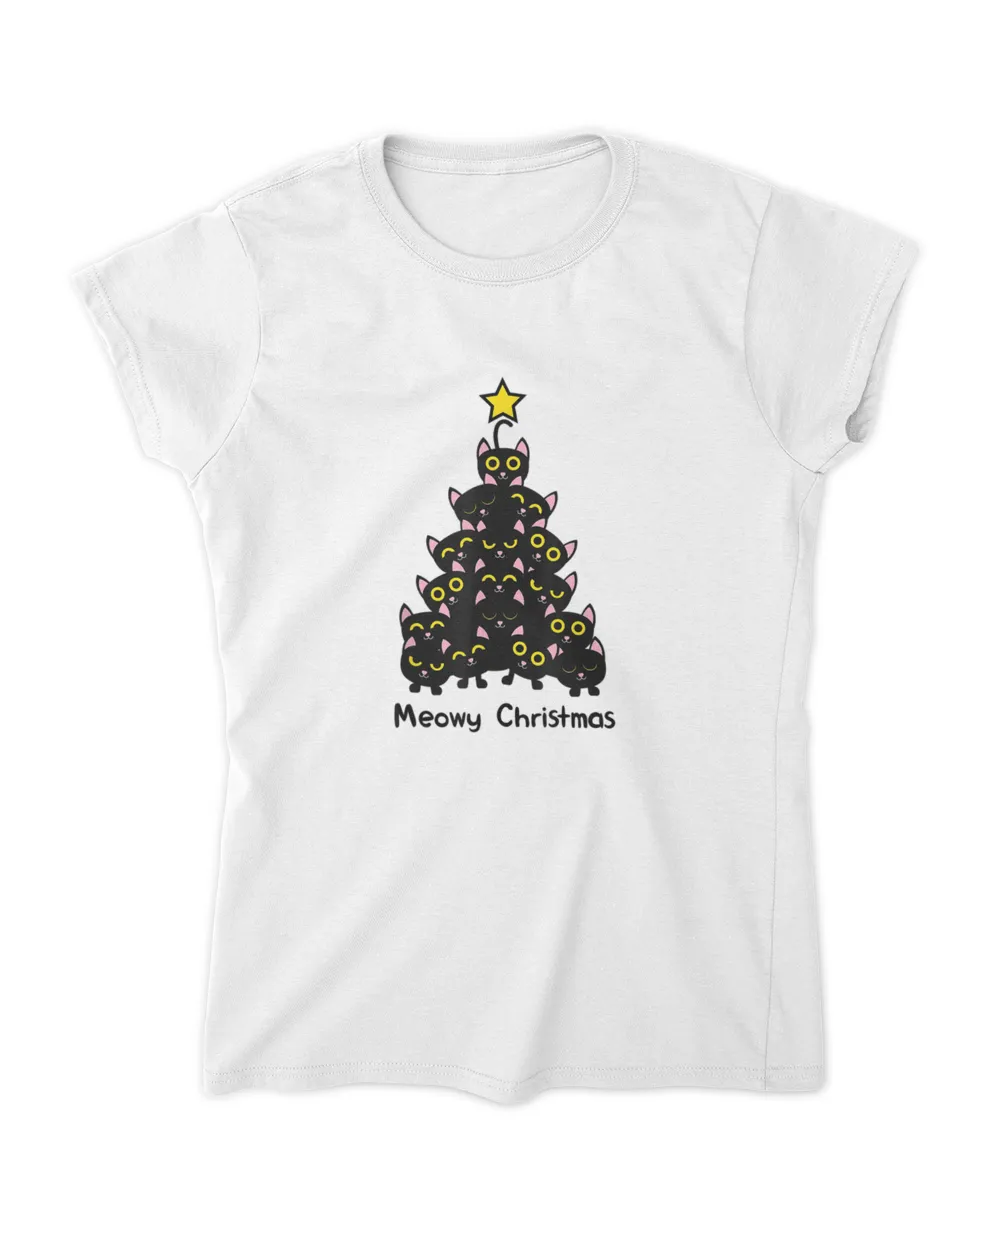 Meowy cat Christmas tree shirt men women